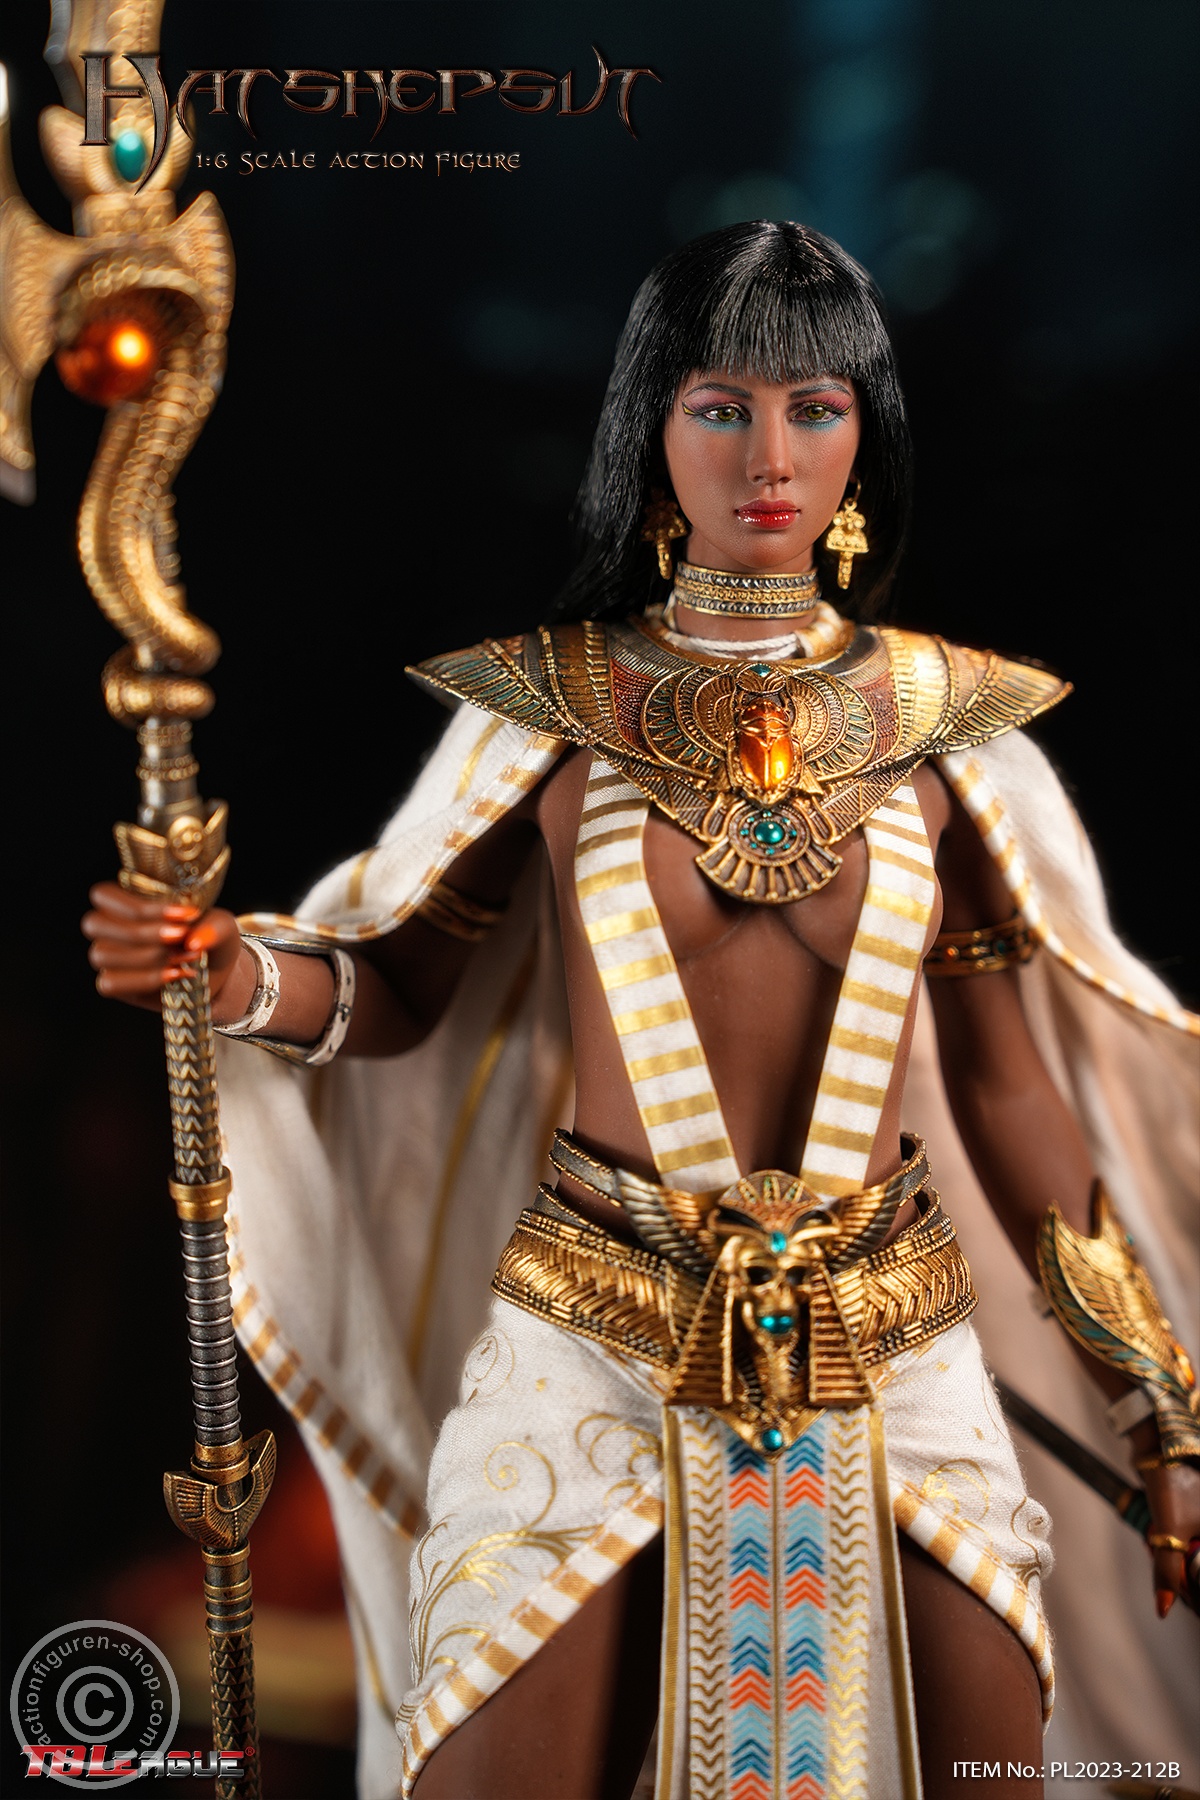 Hatshepsut - Wife of Pharaoh Thutmose II